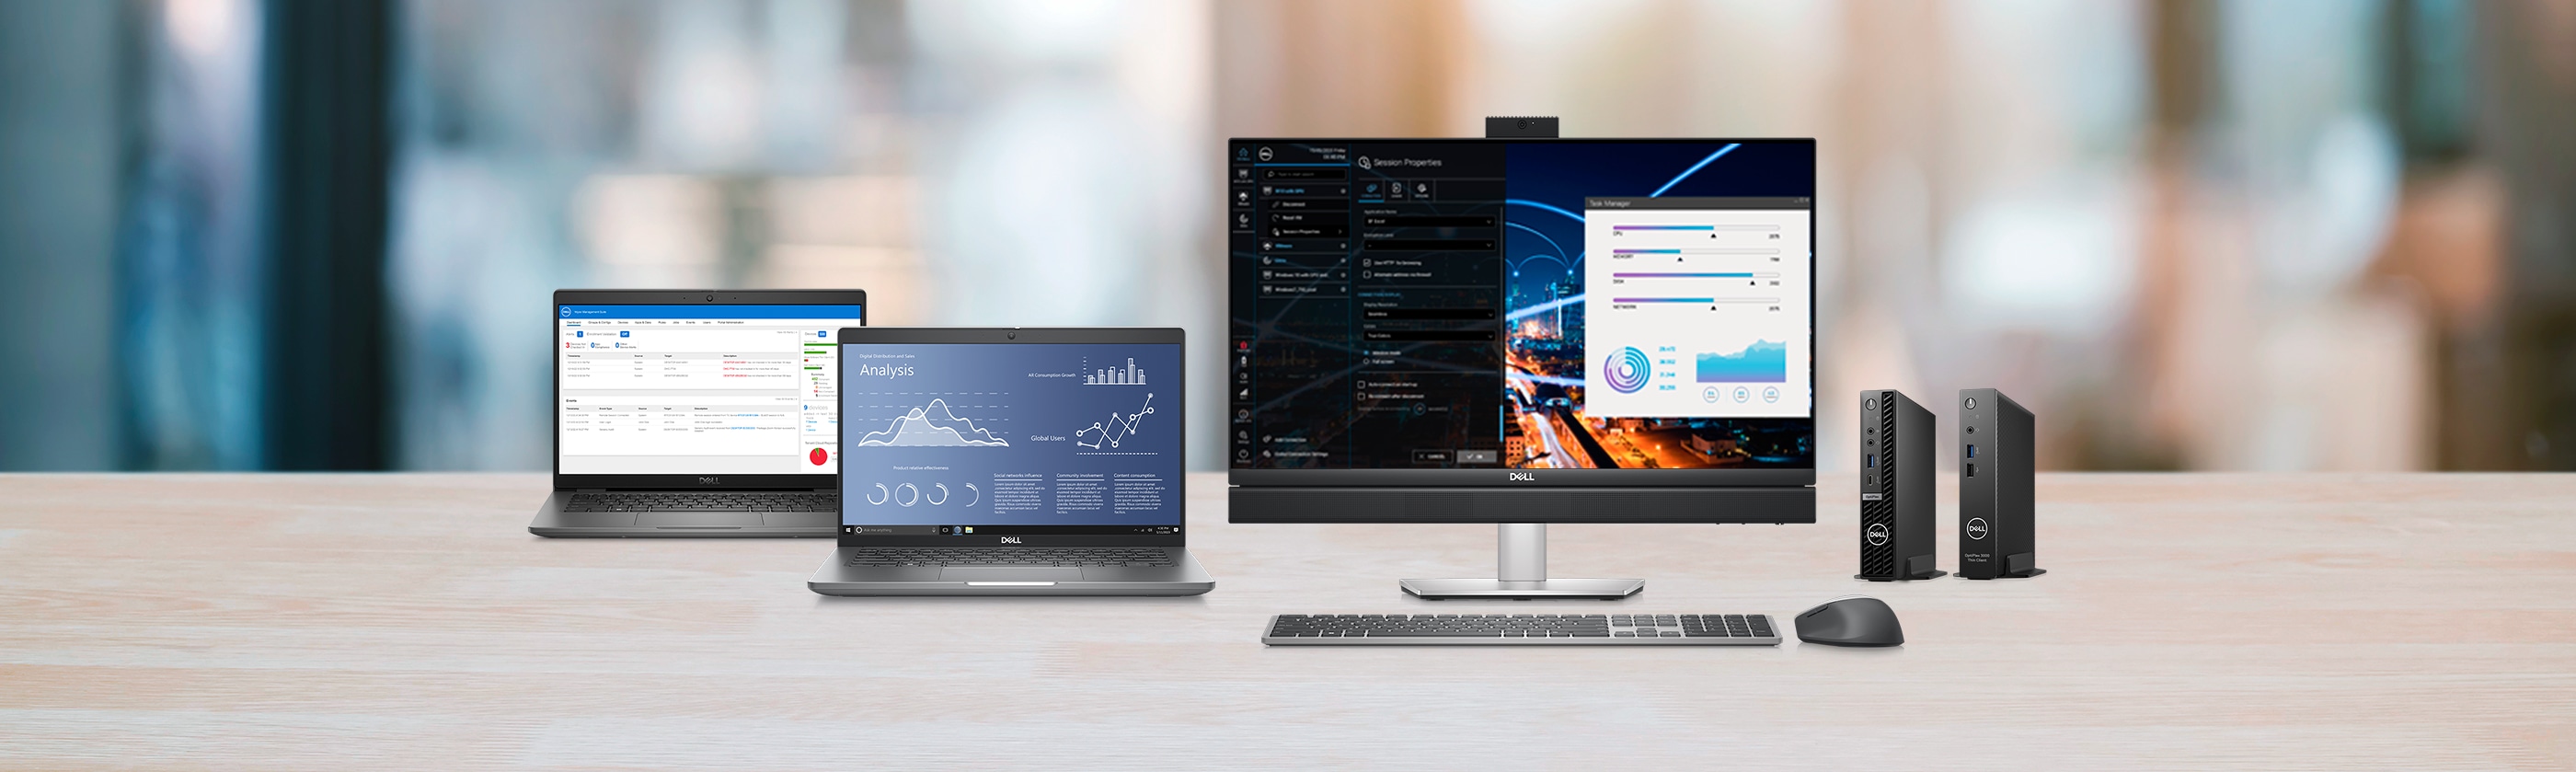 Windows 10 IoT Enterprise: eine flexible, für Dell optimierte Softwareoption